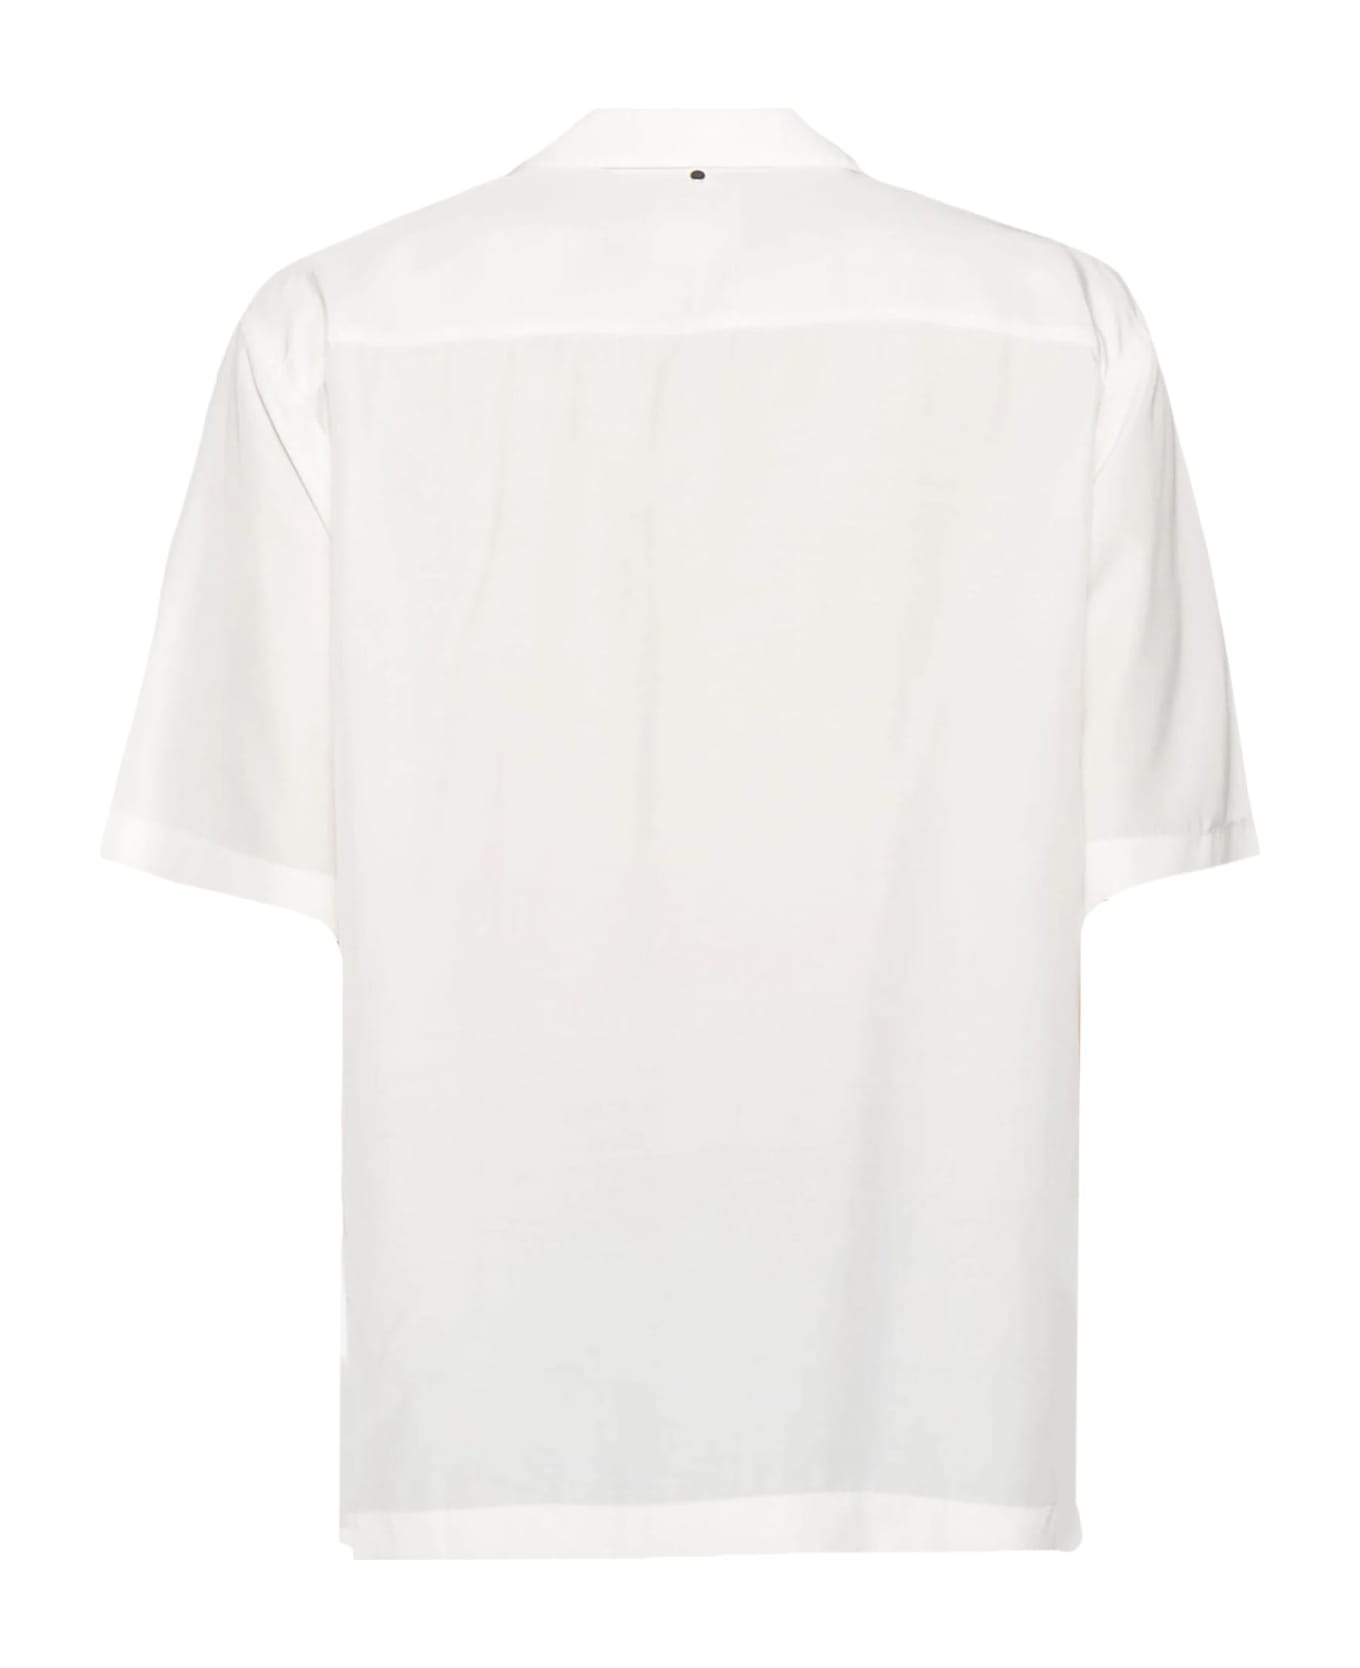 OAMC Shirts White - White